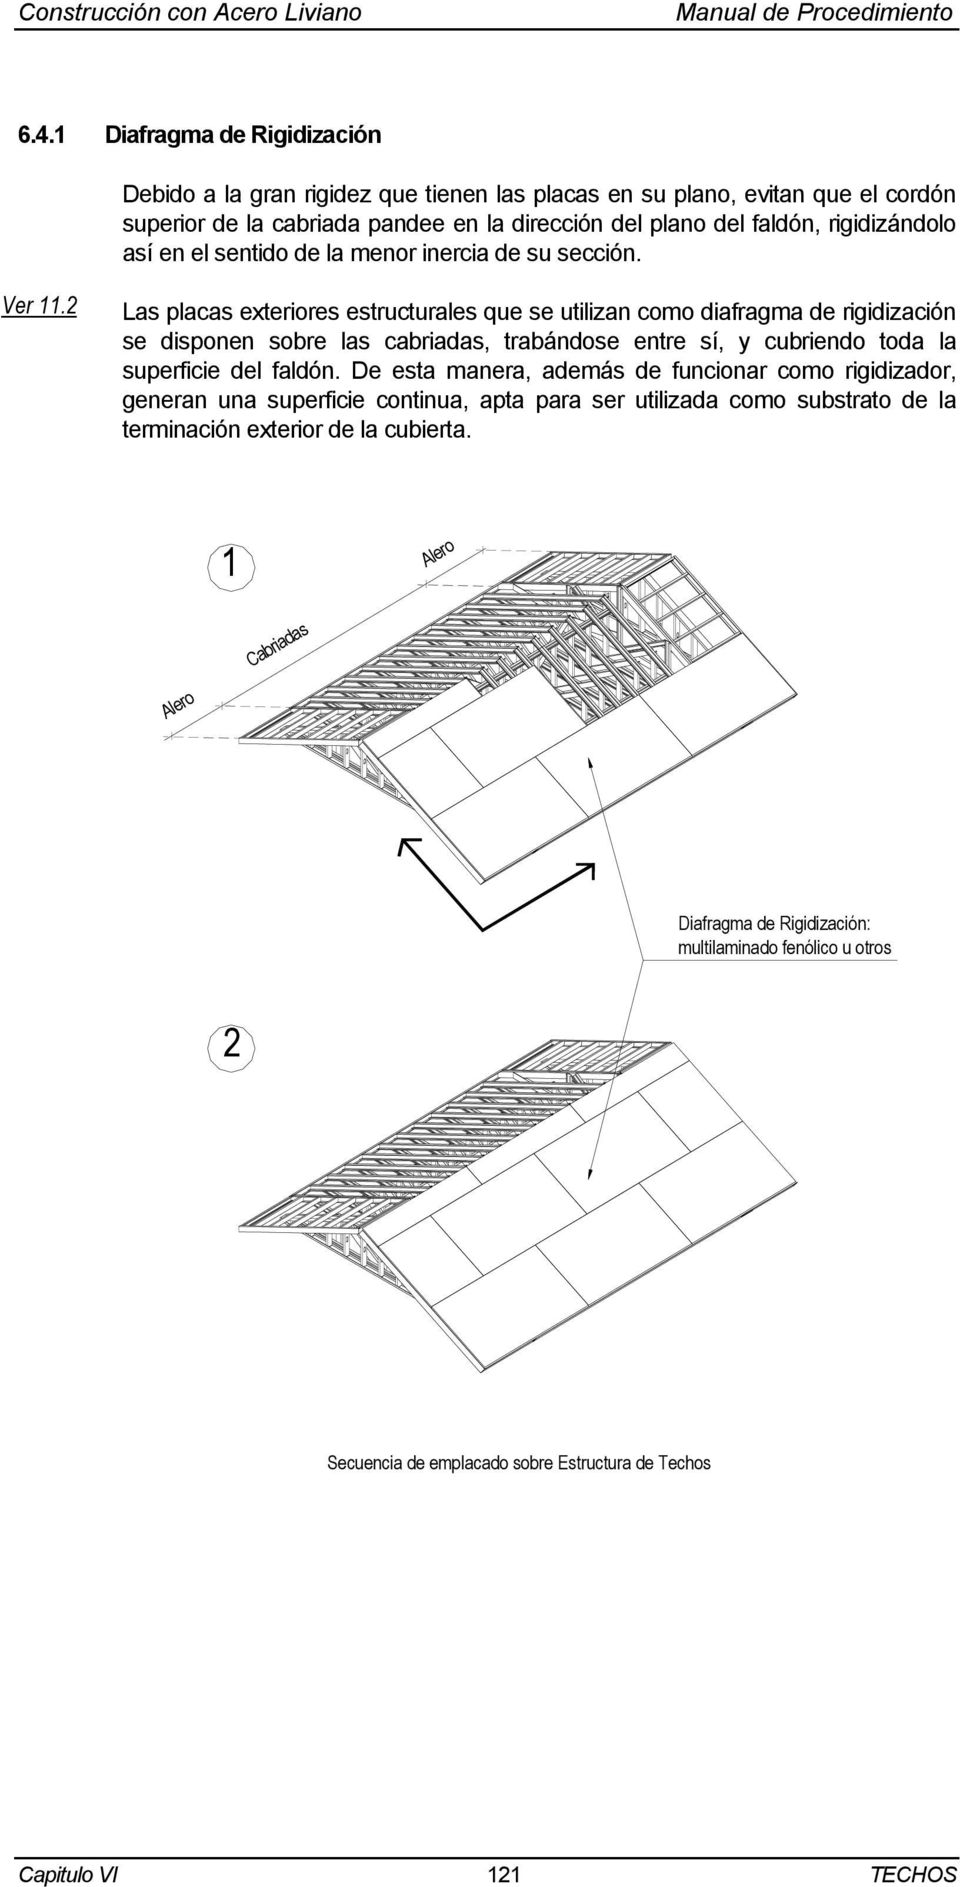 2 Las placas exteriores estructurales que se utilizan como diafragma de rigidización se disponen sobre las cabriadas, trabándose entre sí, y cubriendo toda la superficie del faldón.